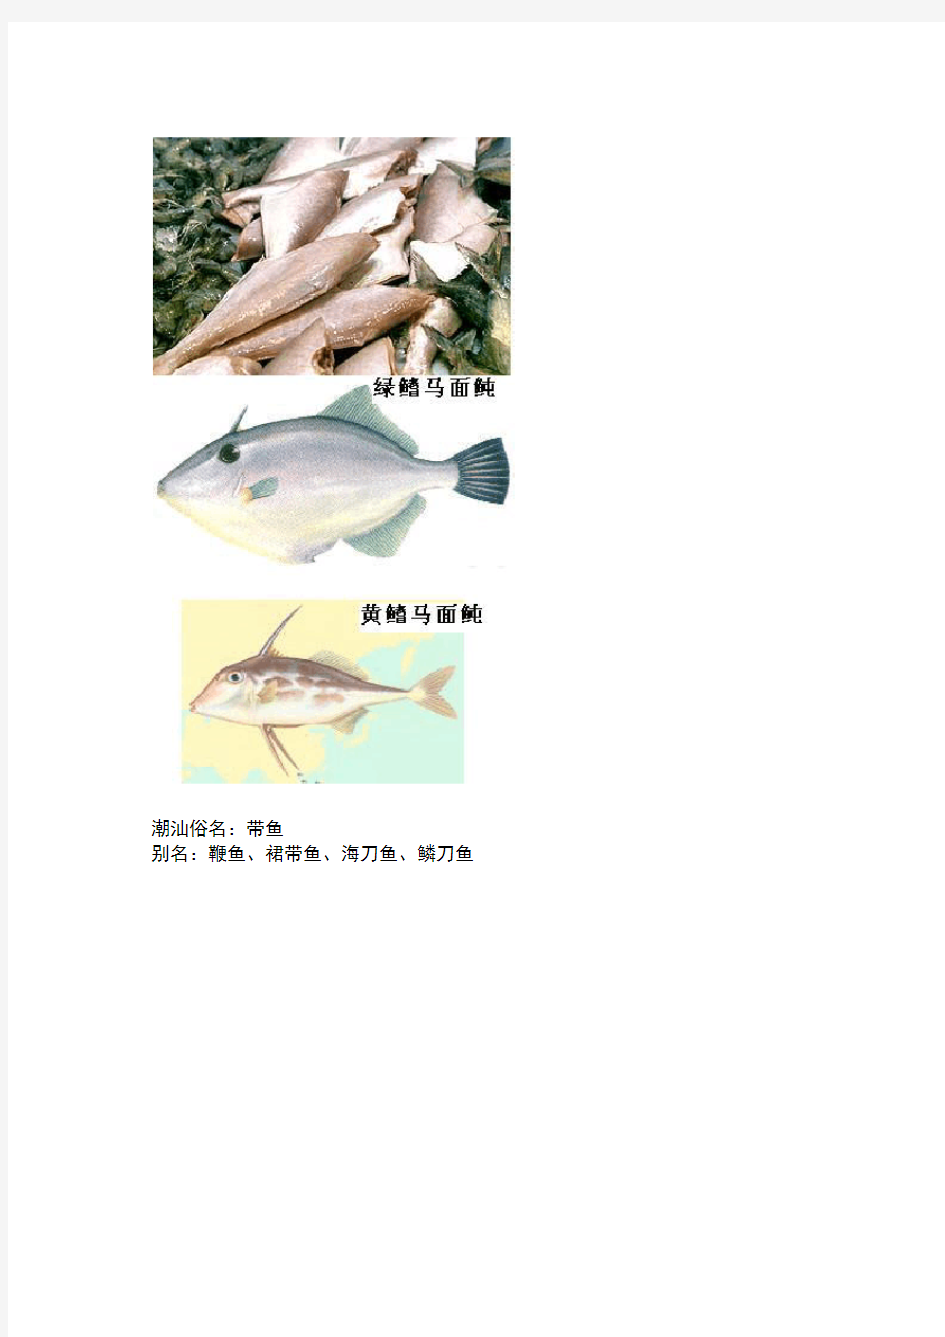 潮汕鱼的读音和分类